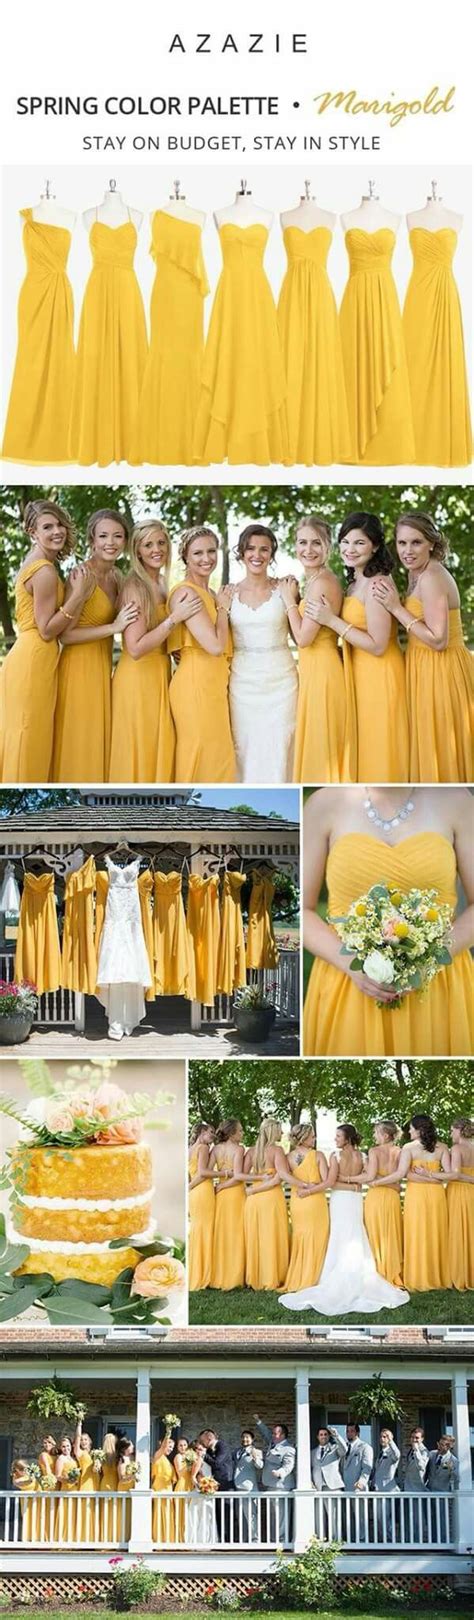 Vestidos para bodas en tono amarillo: ¡Elige el sol radiante para tu estilo nupcial!